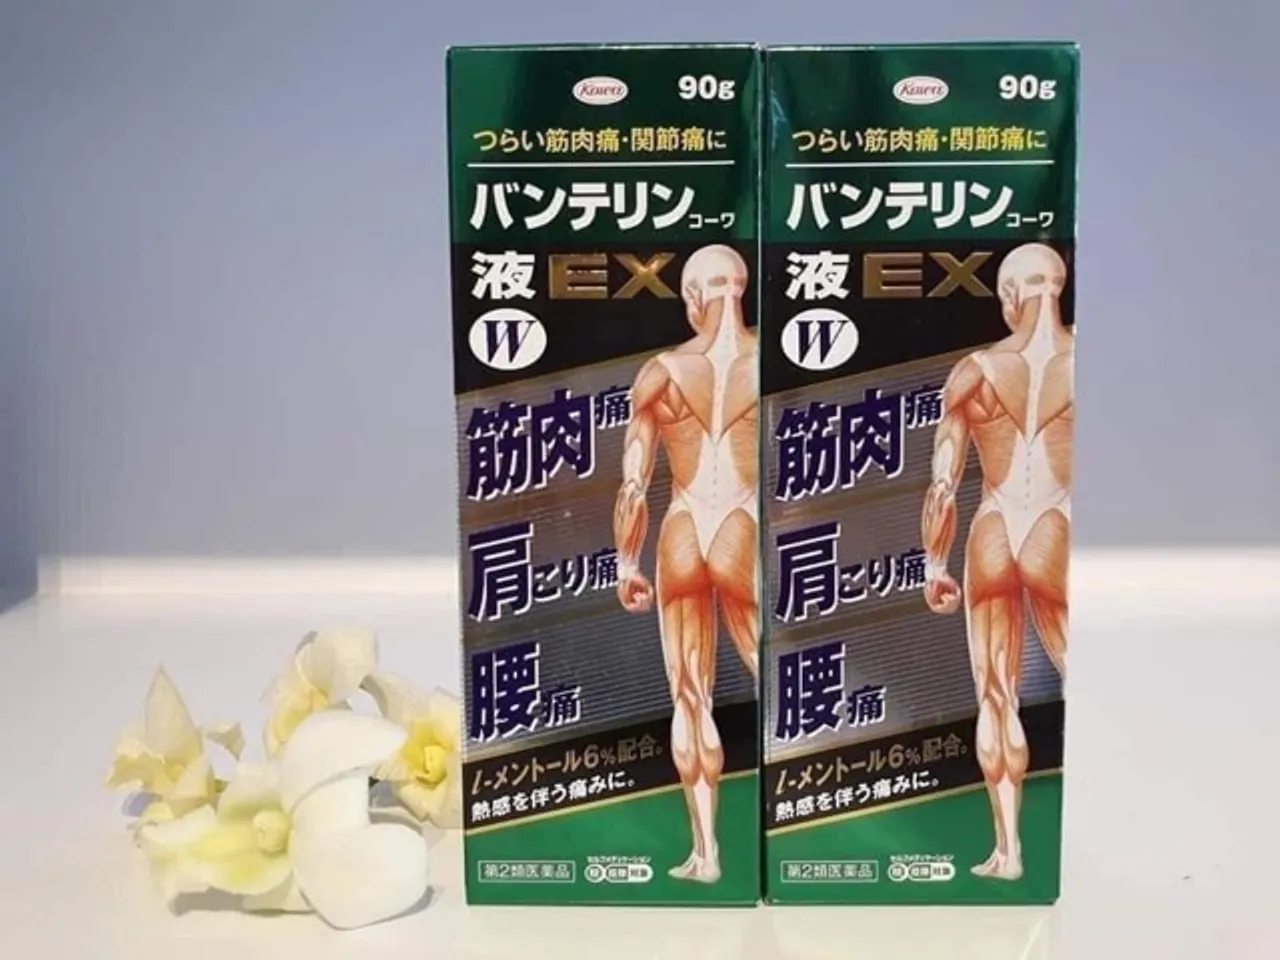 Lăn bôi giảm đau xương khớp Banterin Kowa EX W 90g Nhật Bản, giảm đau xương khớp,  Banterin Kowa EX W 90g